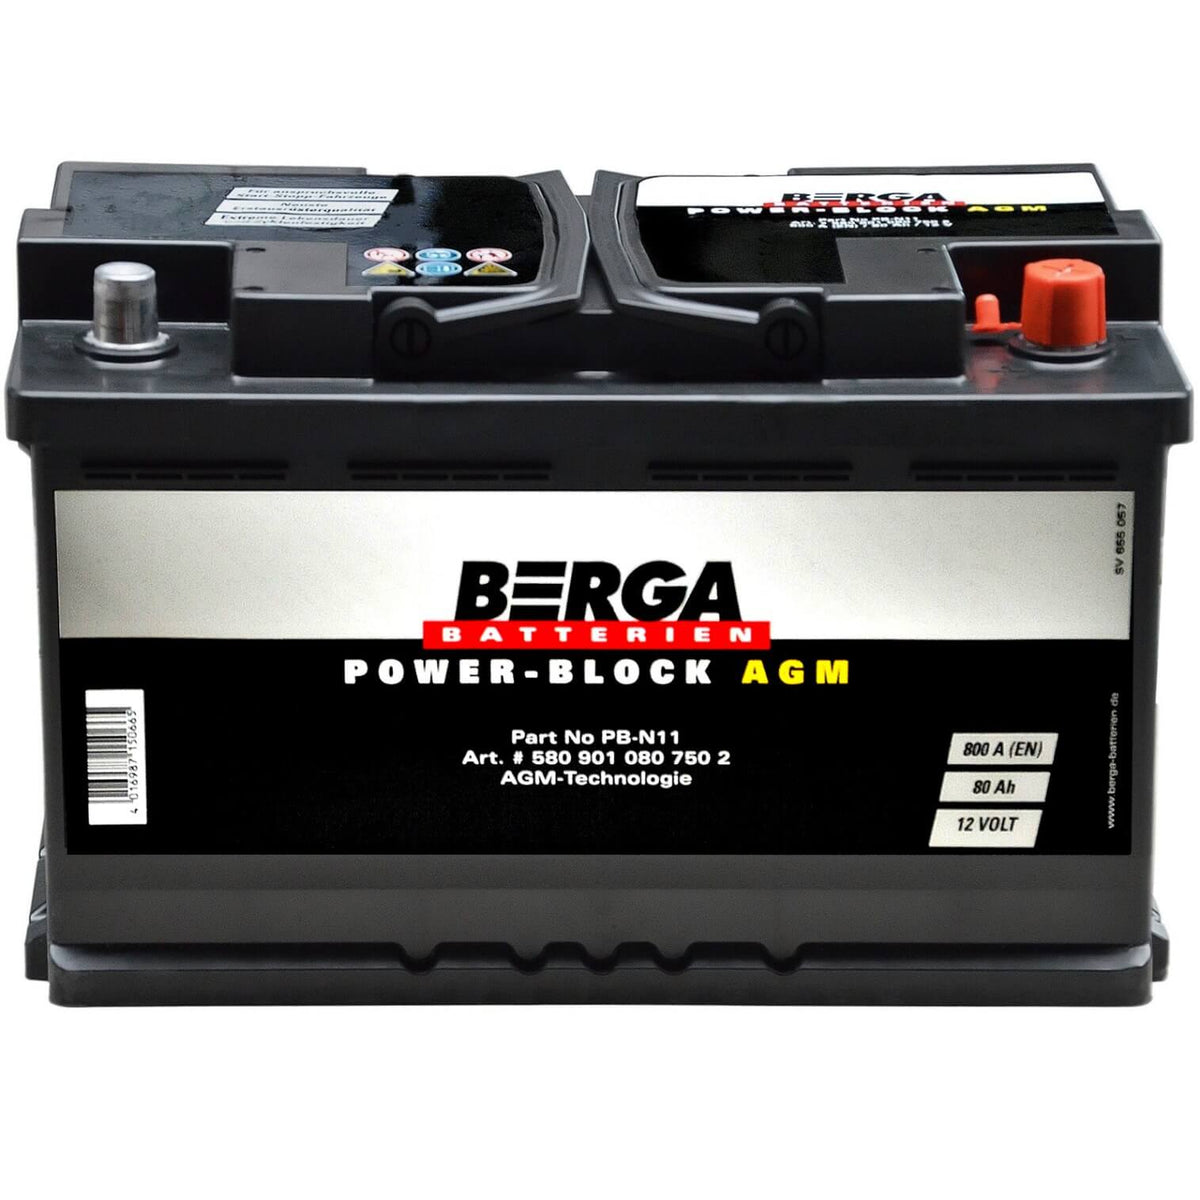 BERGA POWER-BLOCK AGM 12V 80Ah 800A/EN